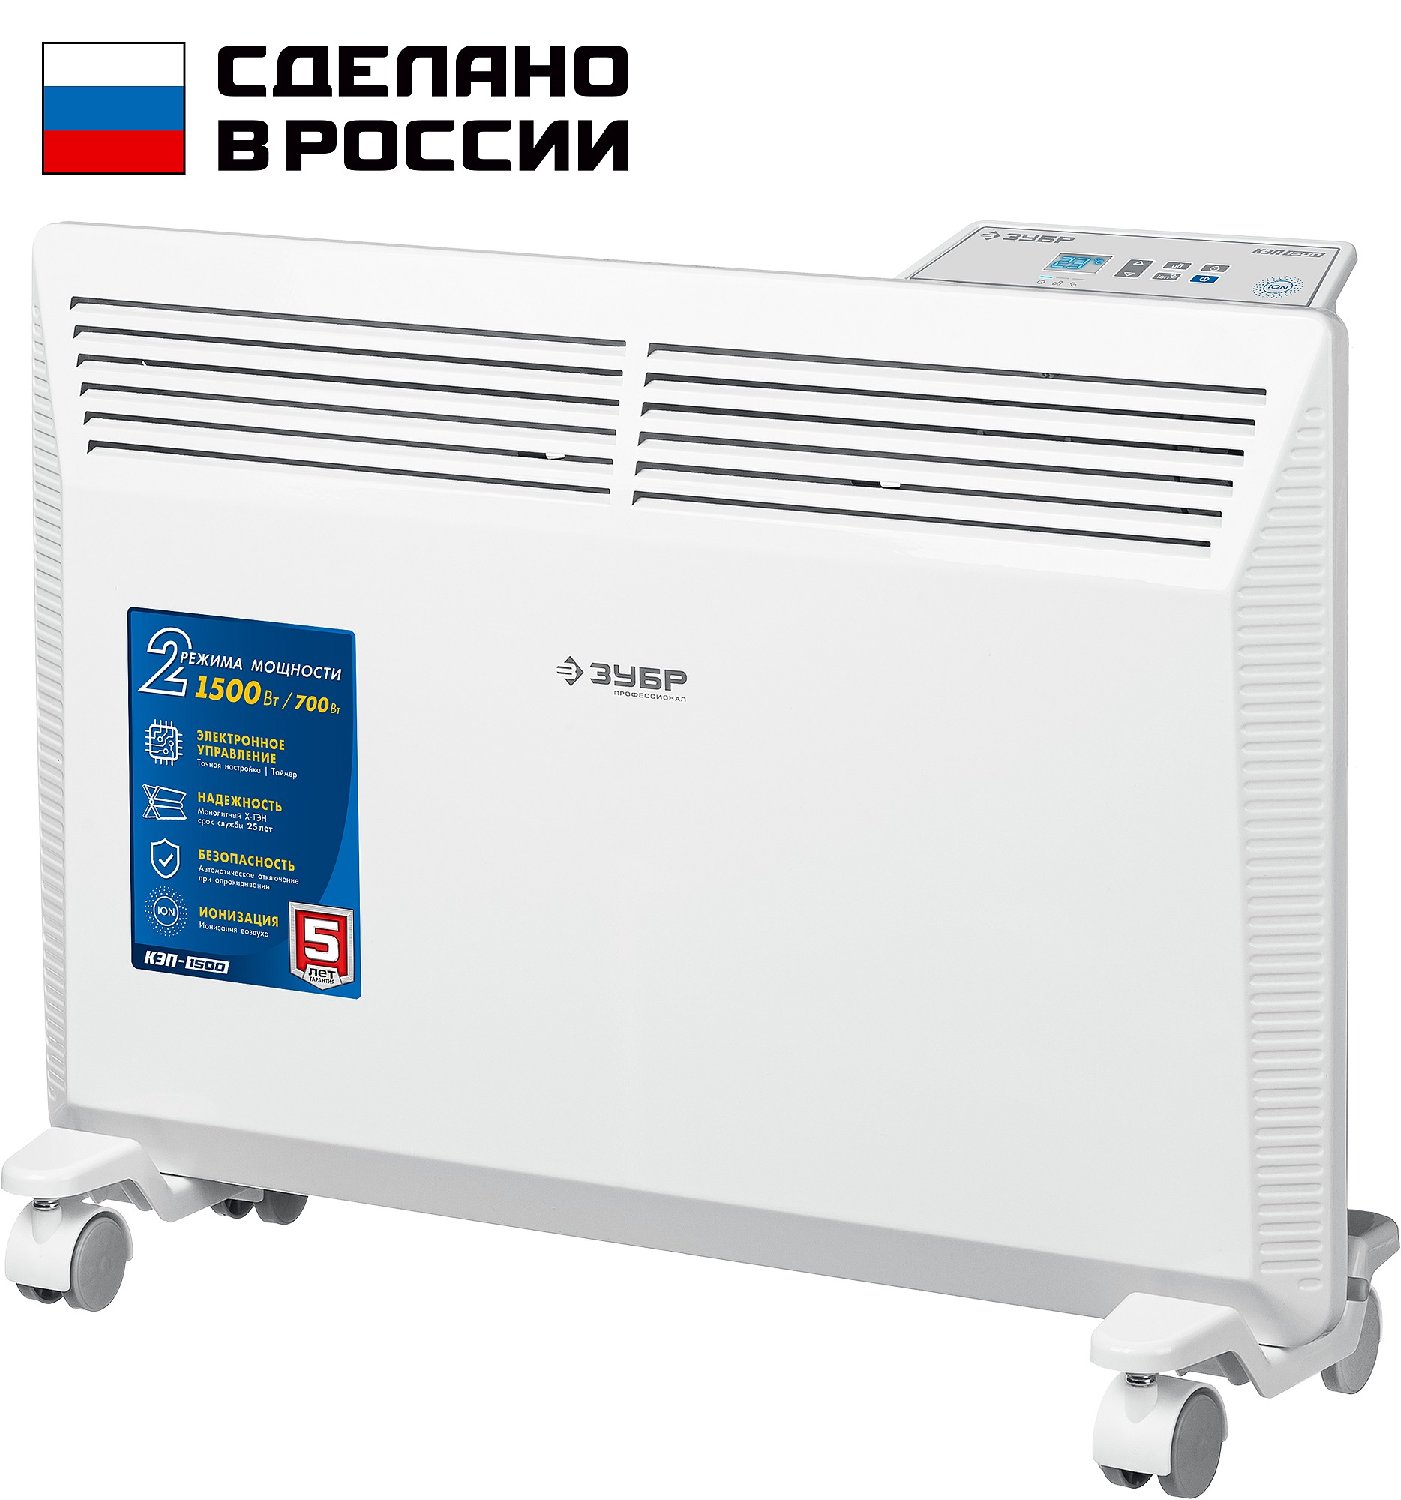 ЗУБР ПРО серия 1.5 кВт, электрический конвектор, Профессионал () (КЭП-1500)Купить